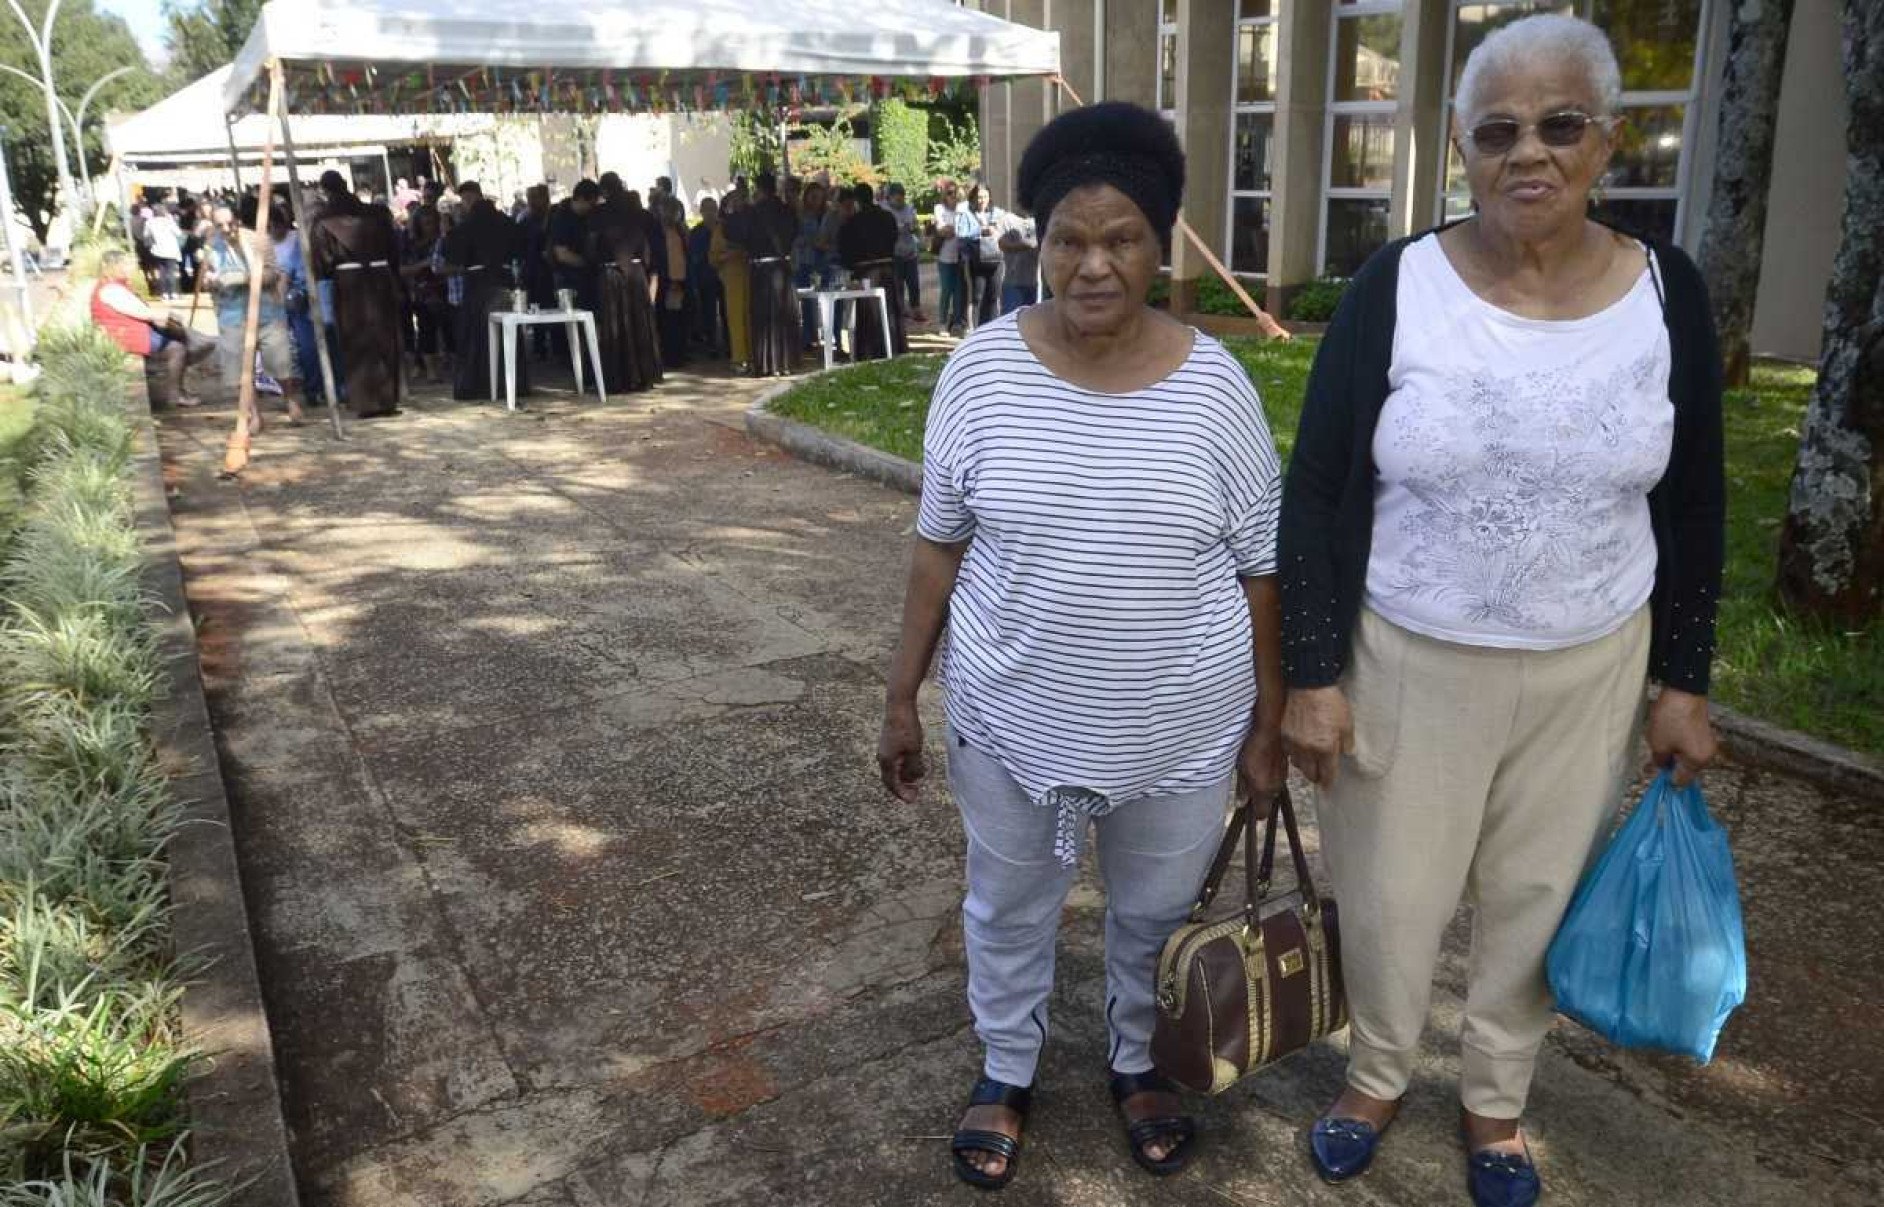  Maria do Socorro Santos frequenta o Santuário há 15 anos e, pela segunda vez, leva a irmã Maria Duo Costa para receber o pãozinho abençoado 